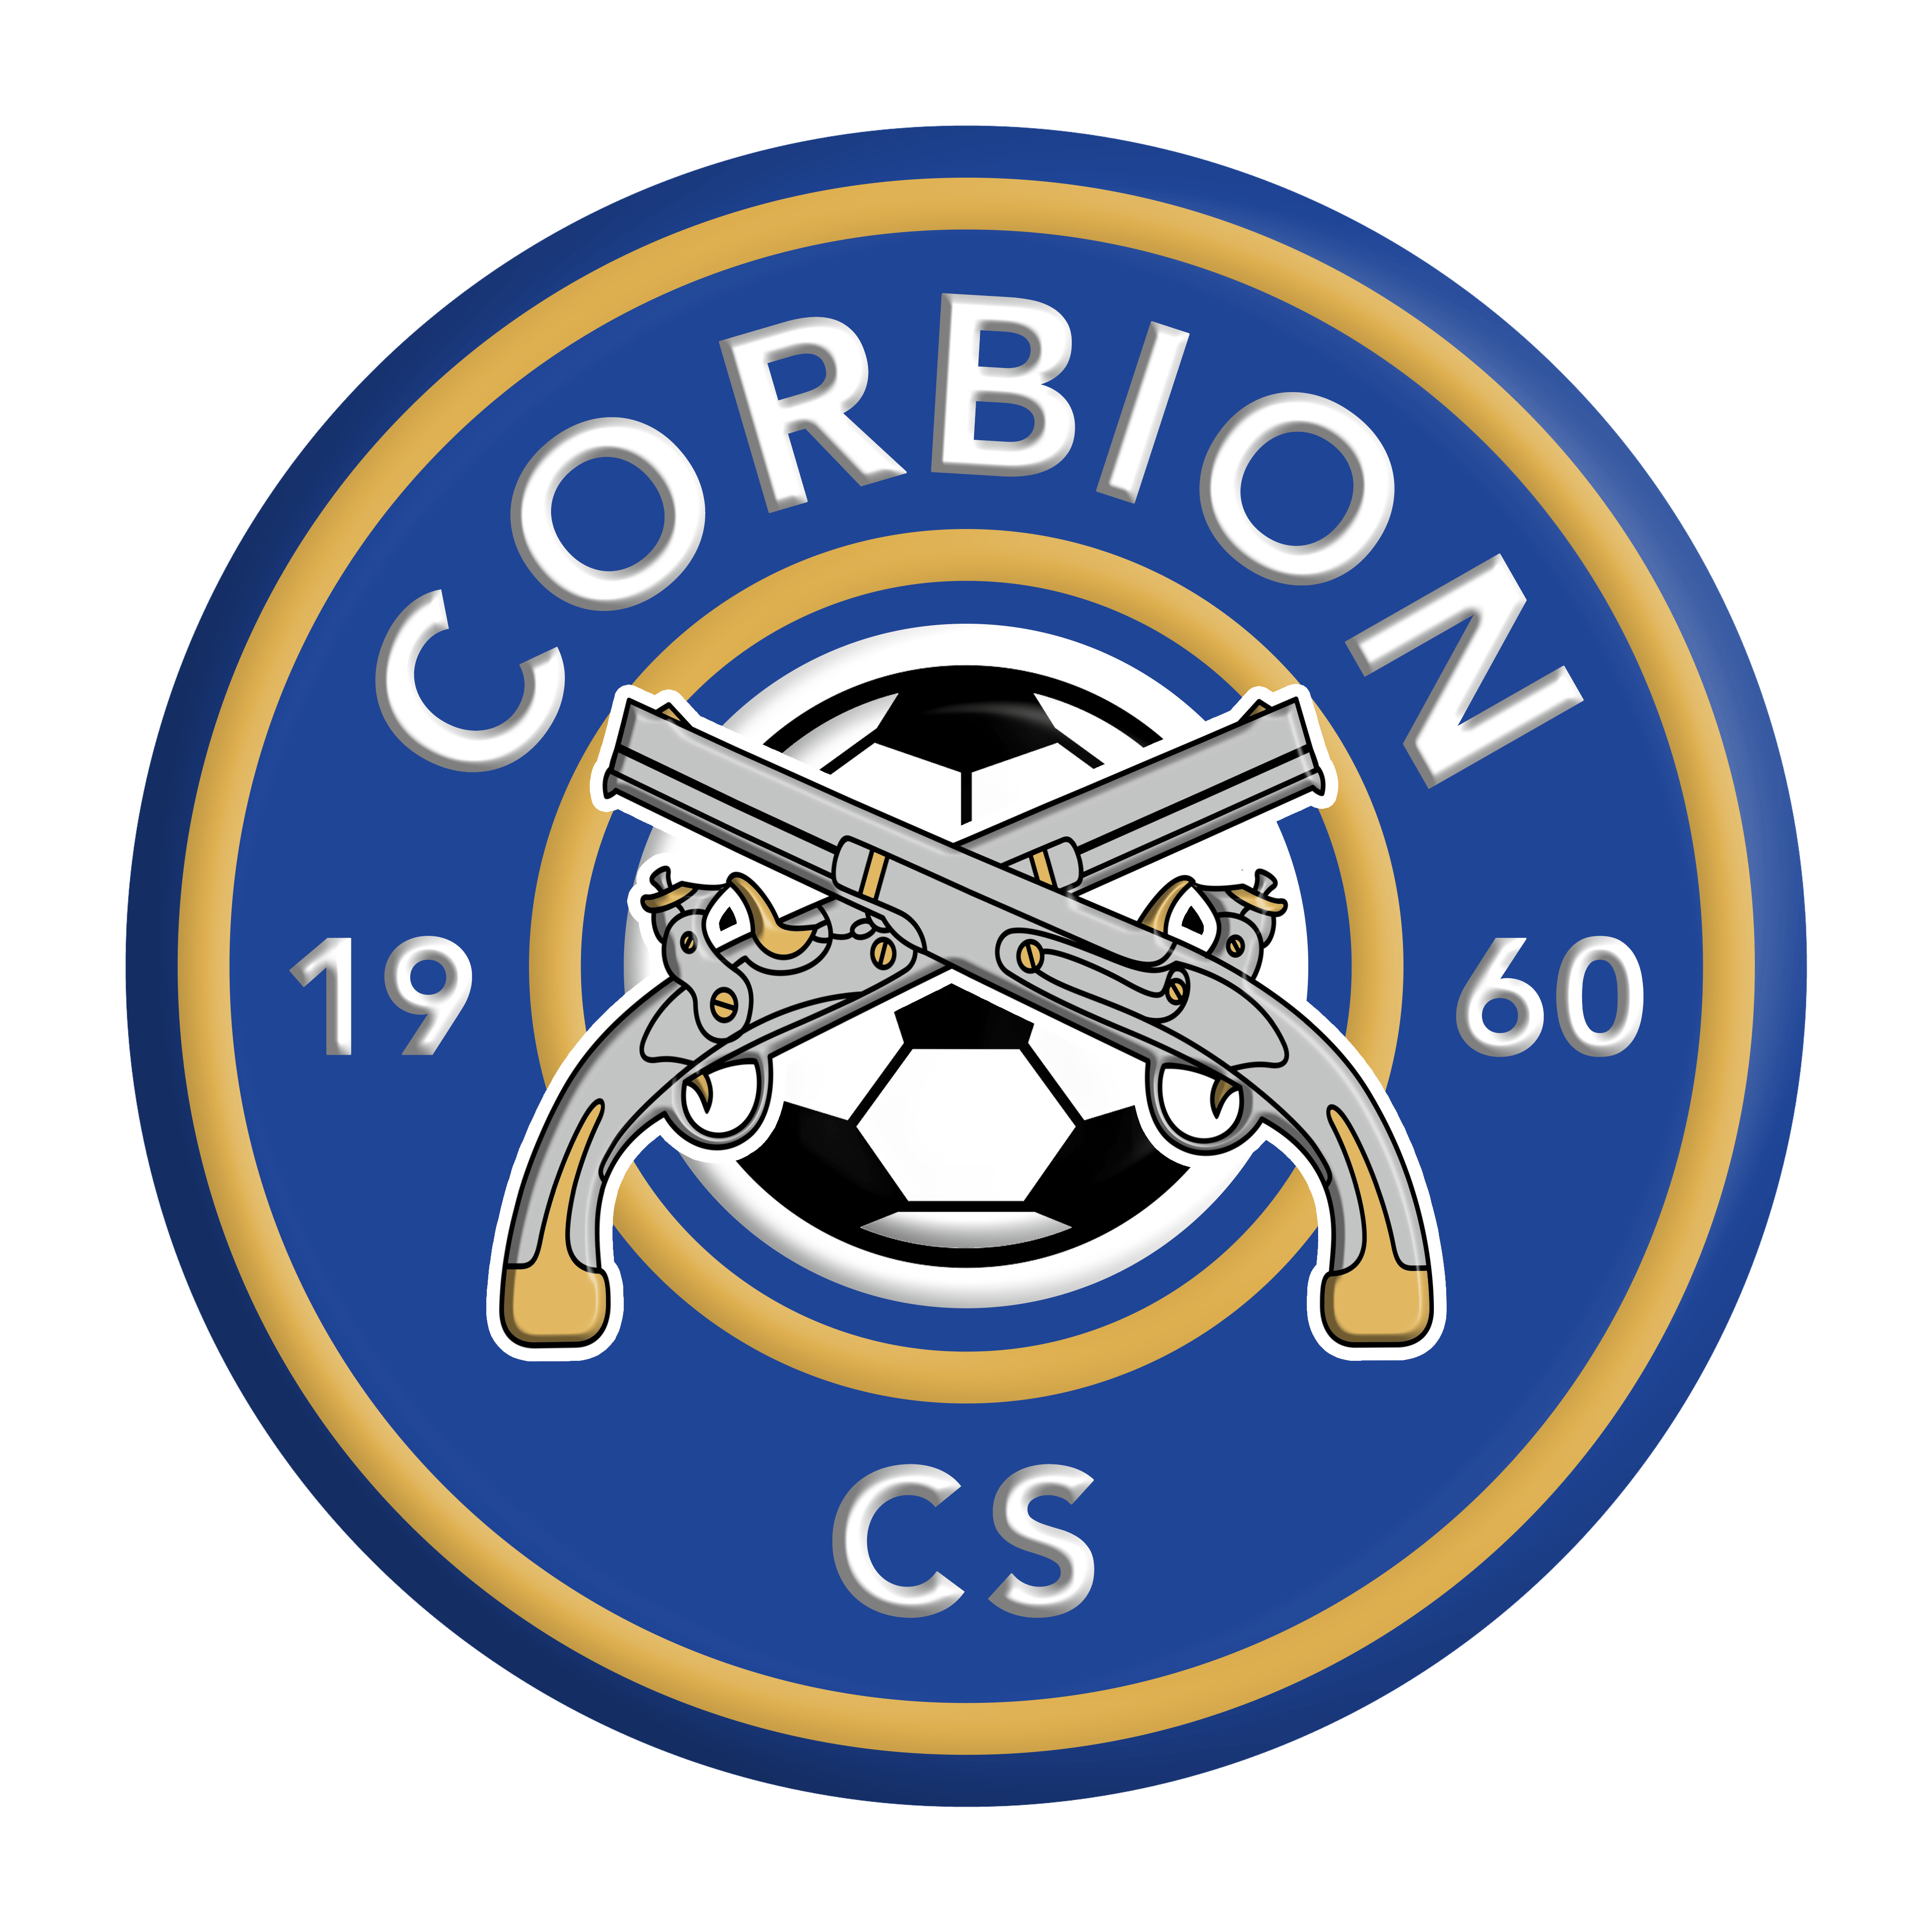 1 - Corbion